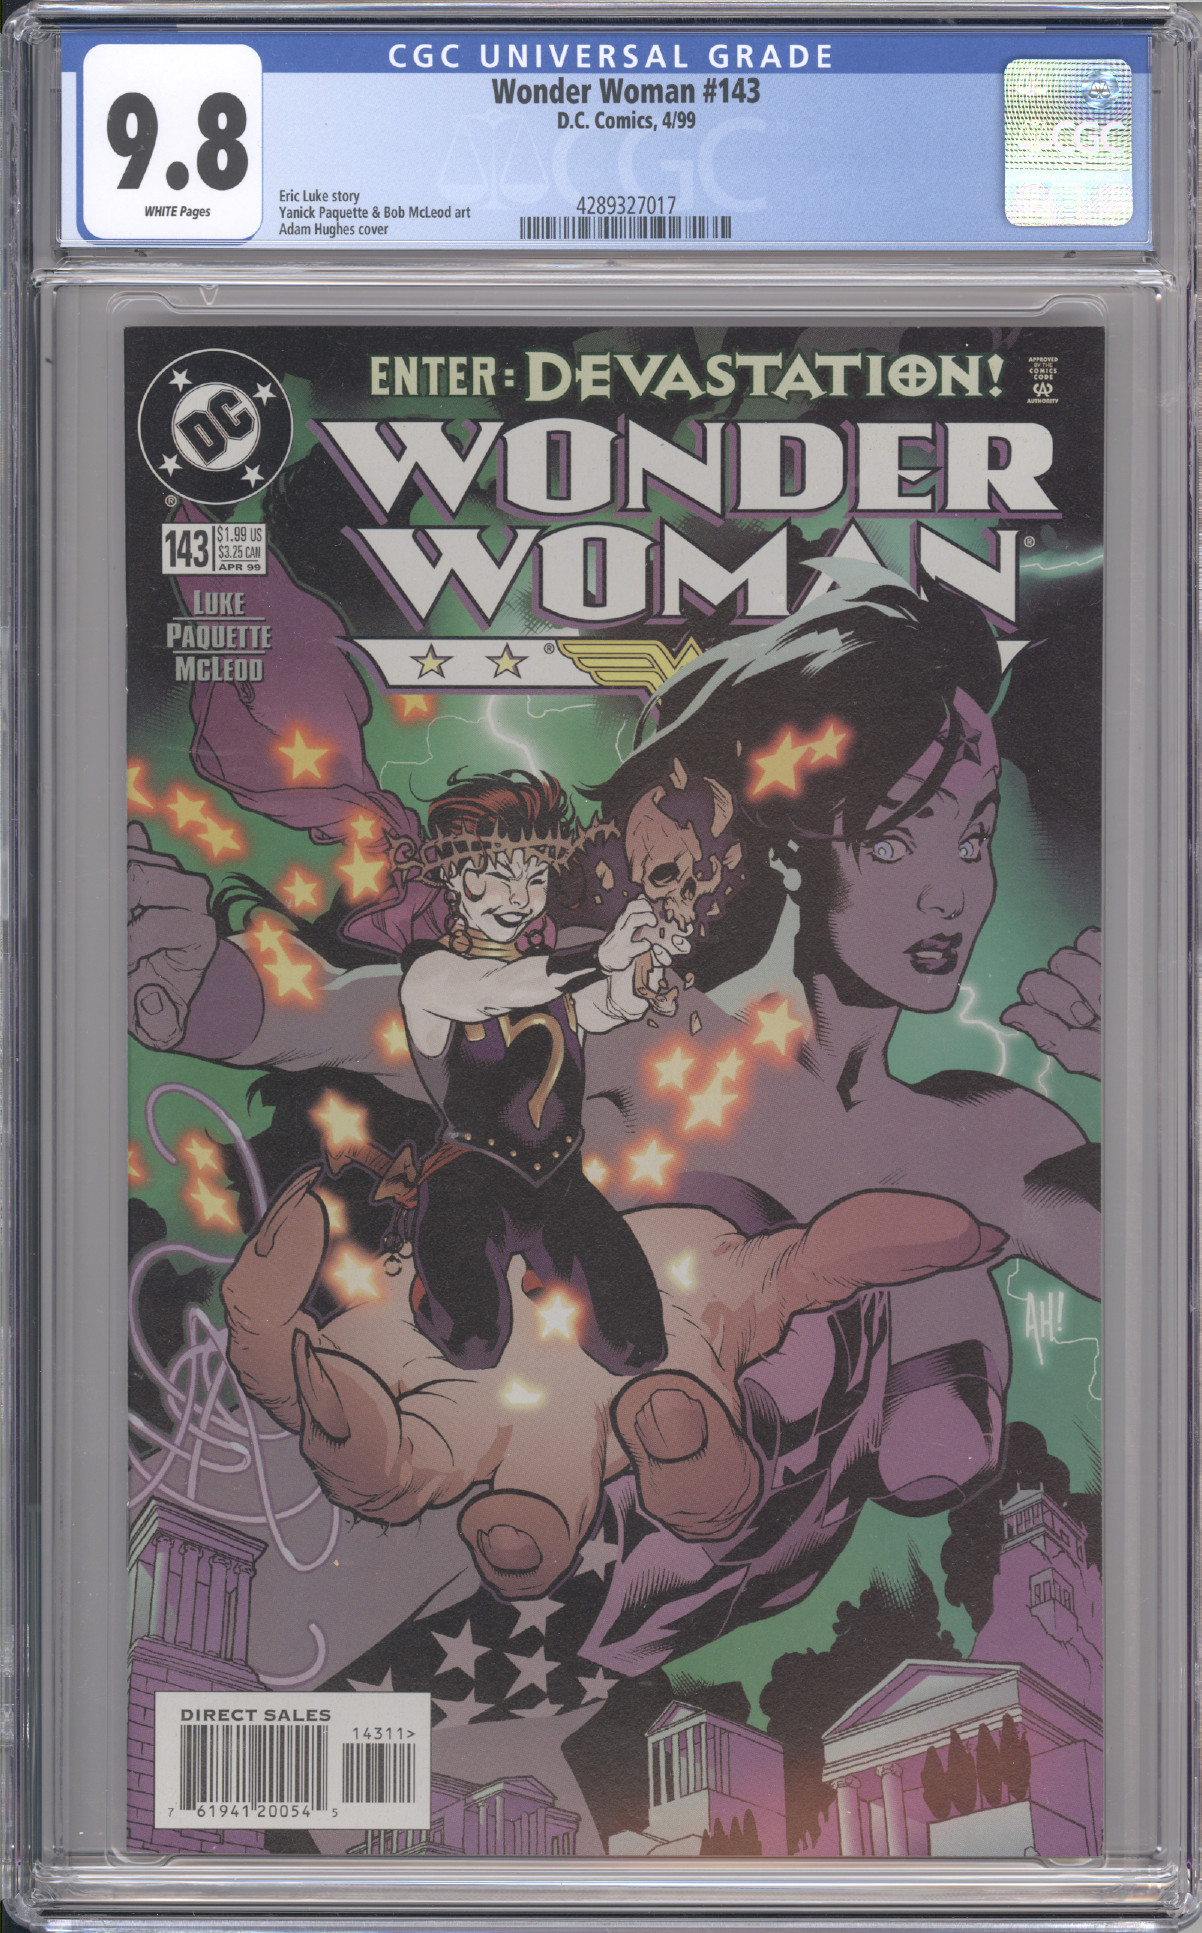 Wonder Woman #143